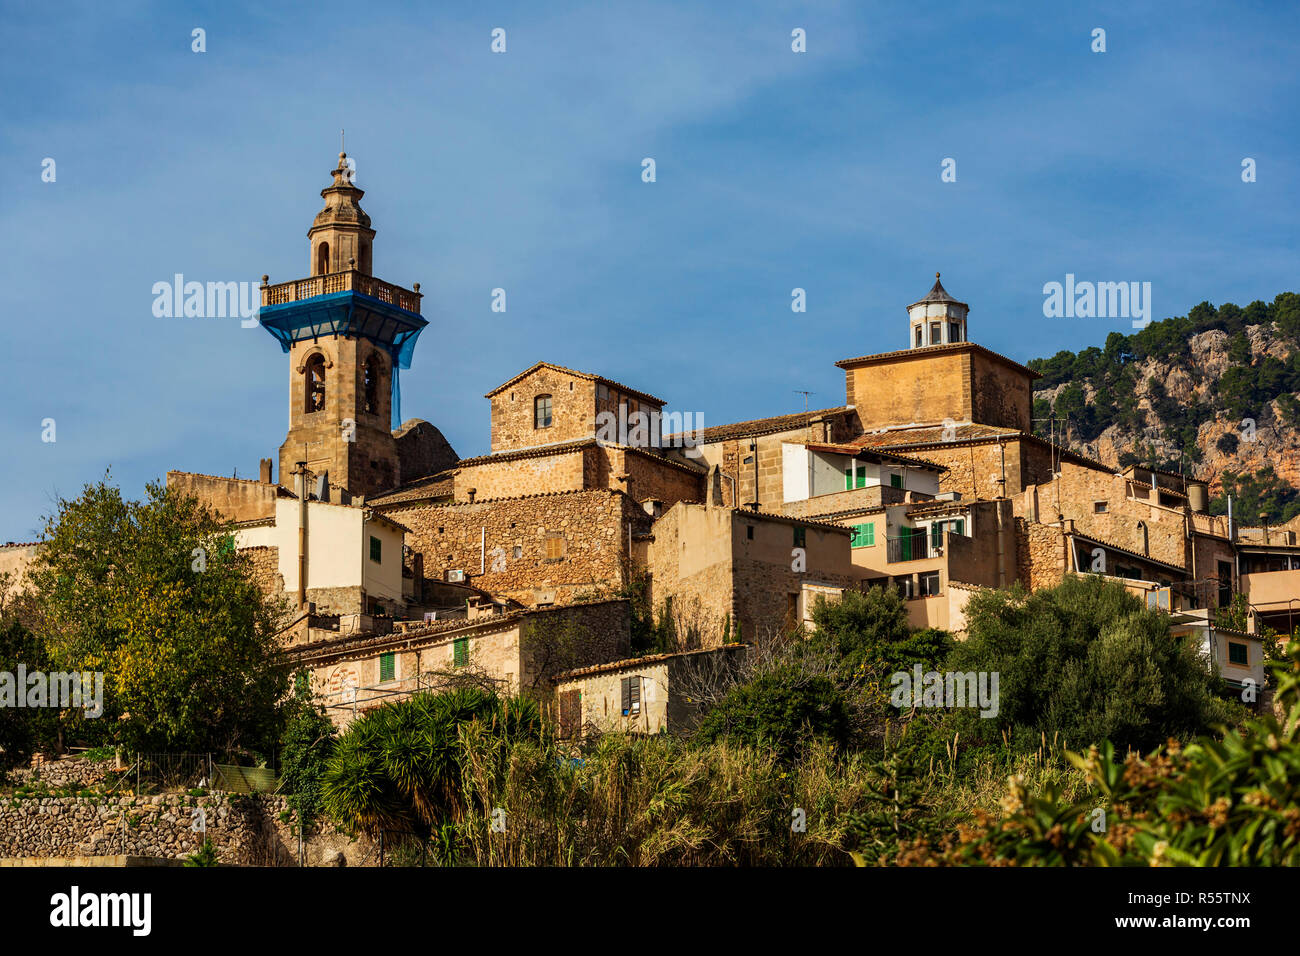 View of the mountain village of Valldemossa, Mallorca, Majorca, Balearics, Spain Stock Photo